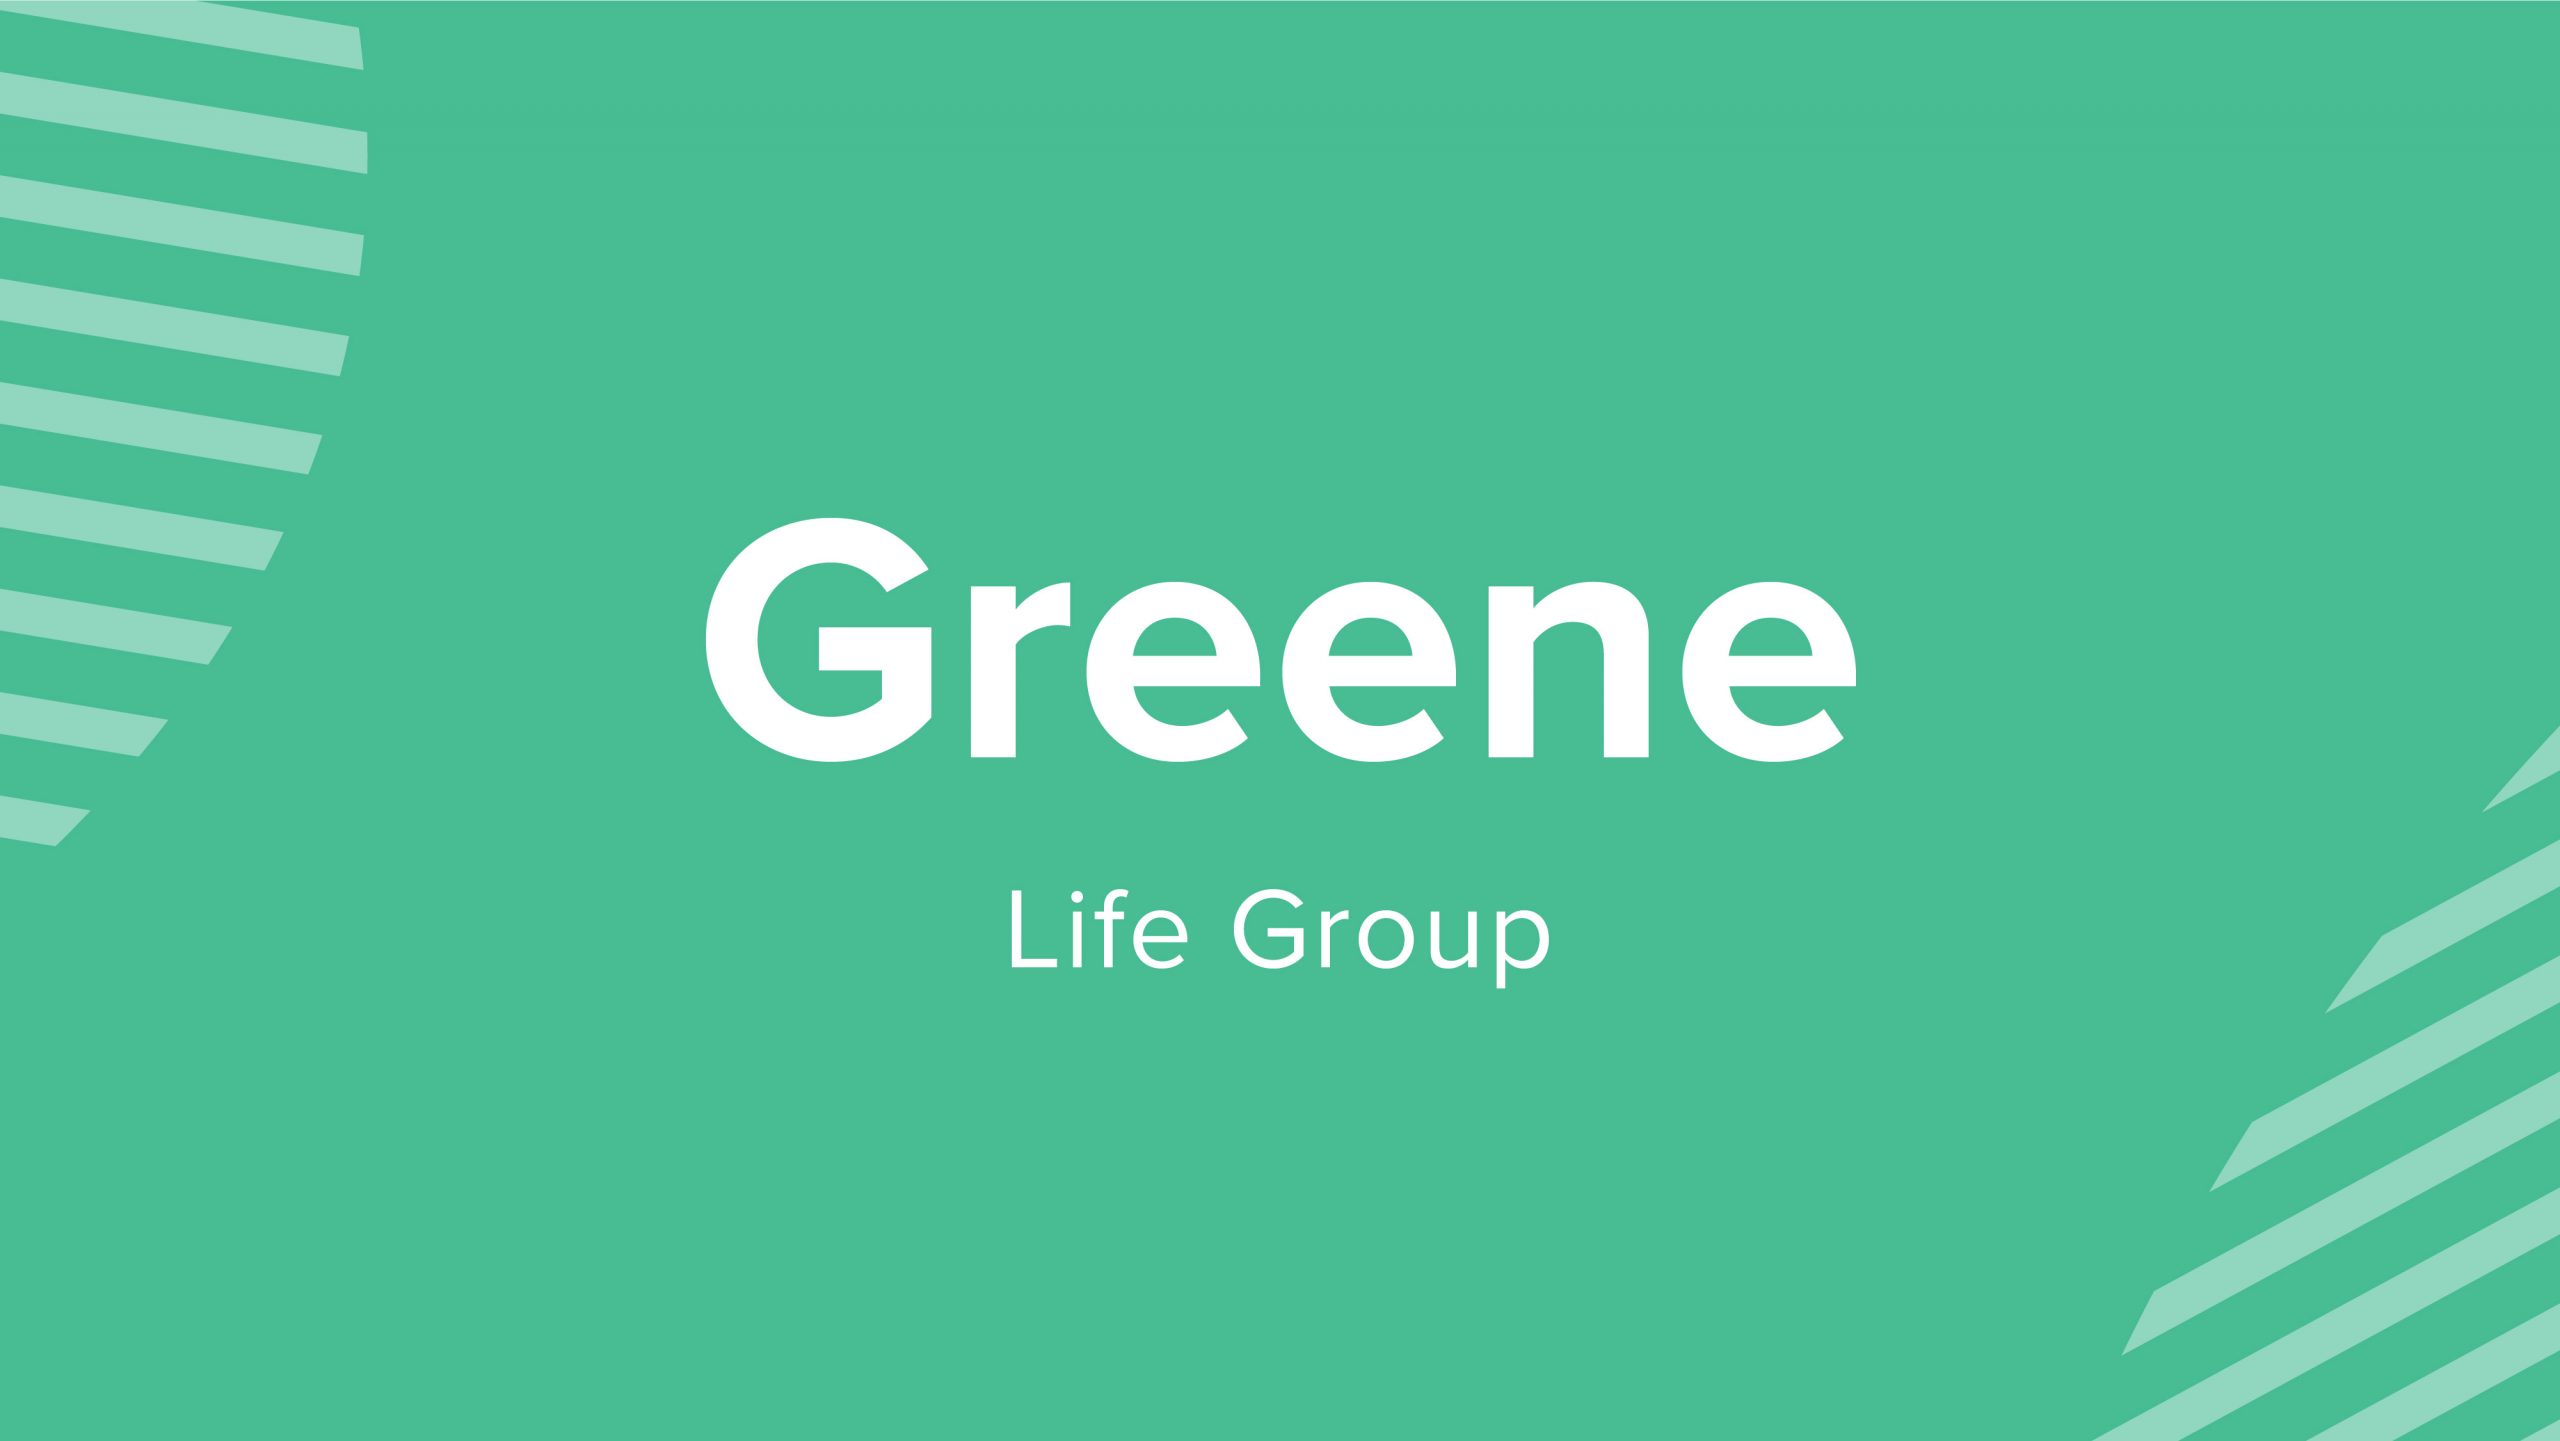 Greene Life Group